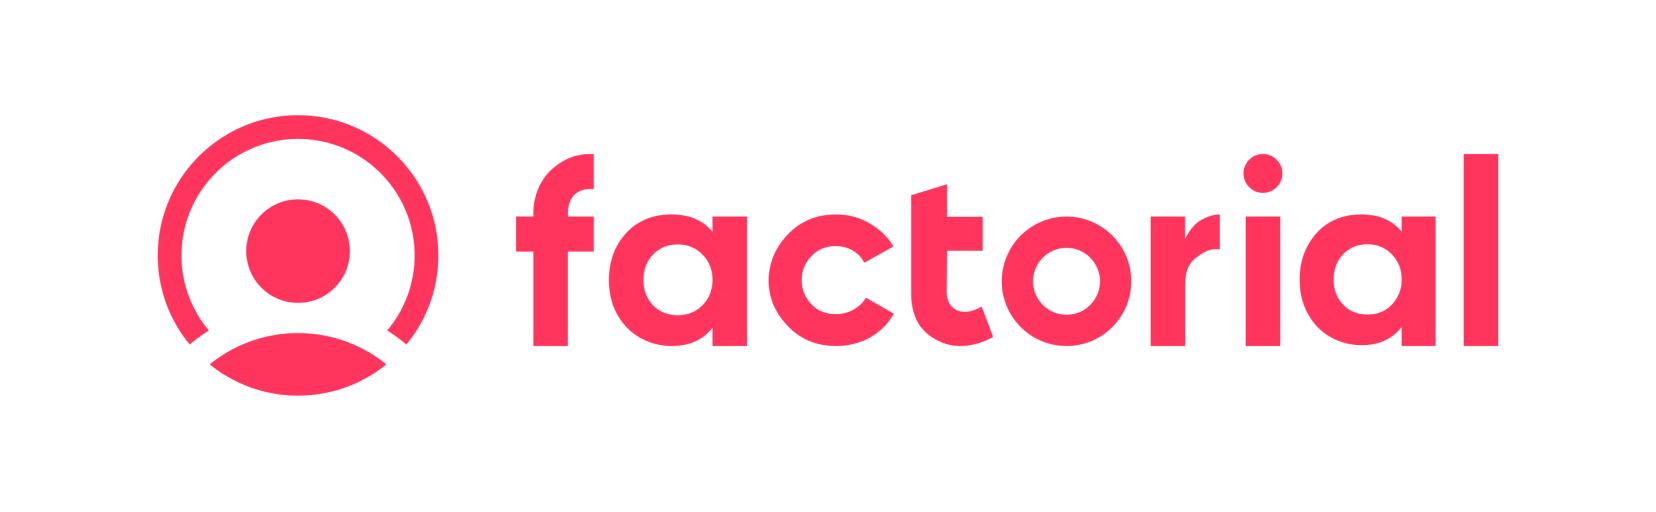 factorial logo-2